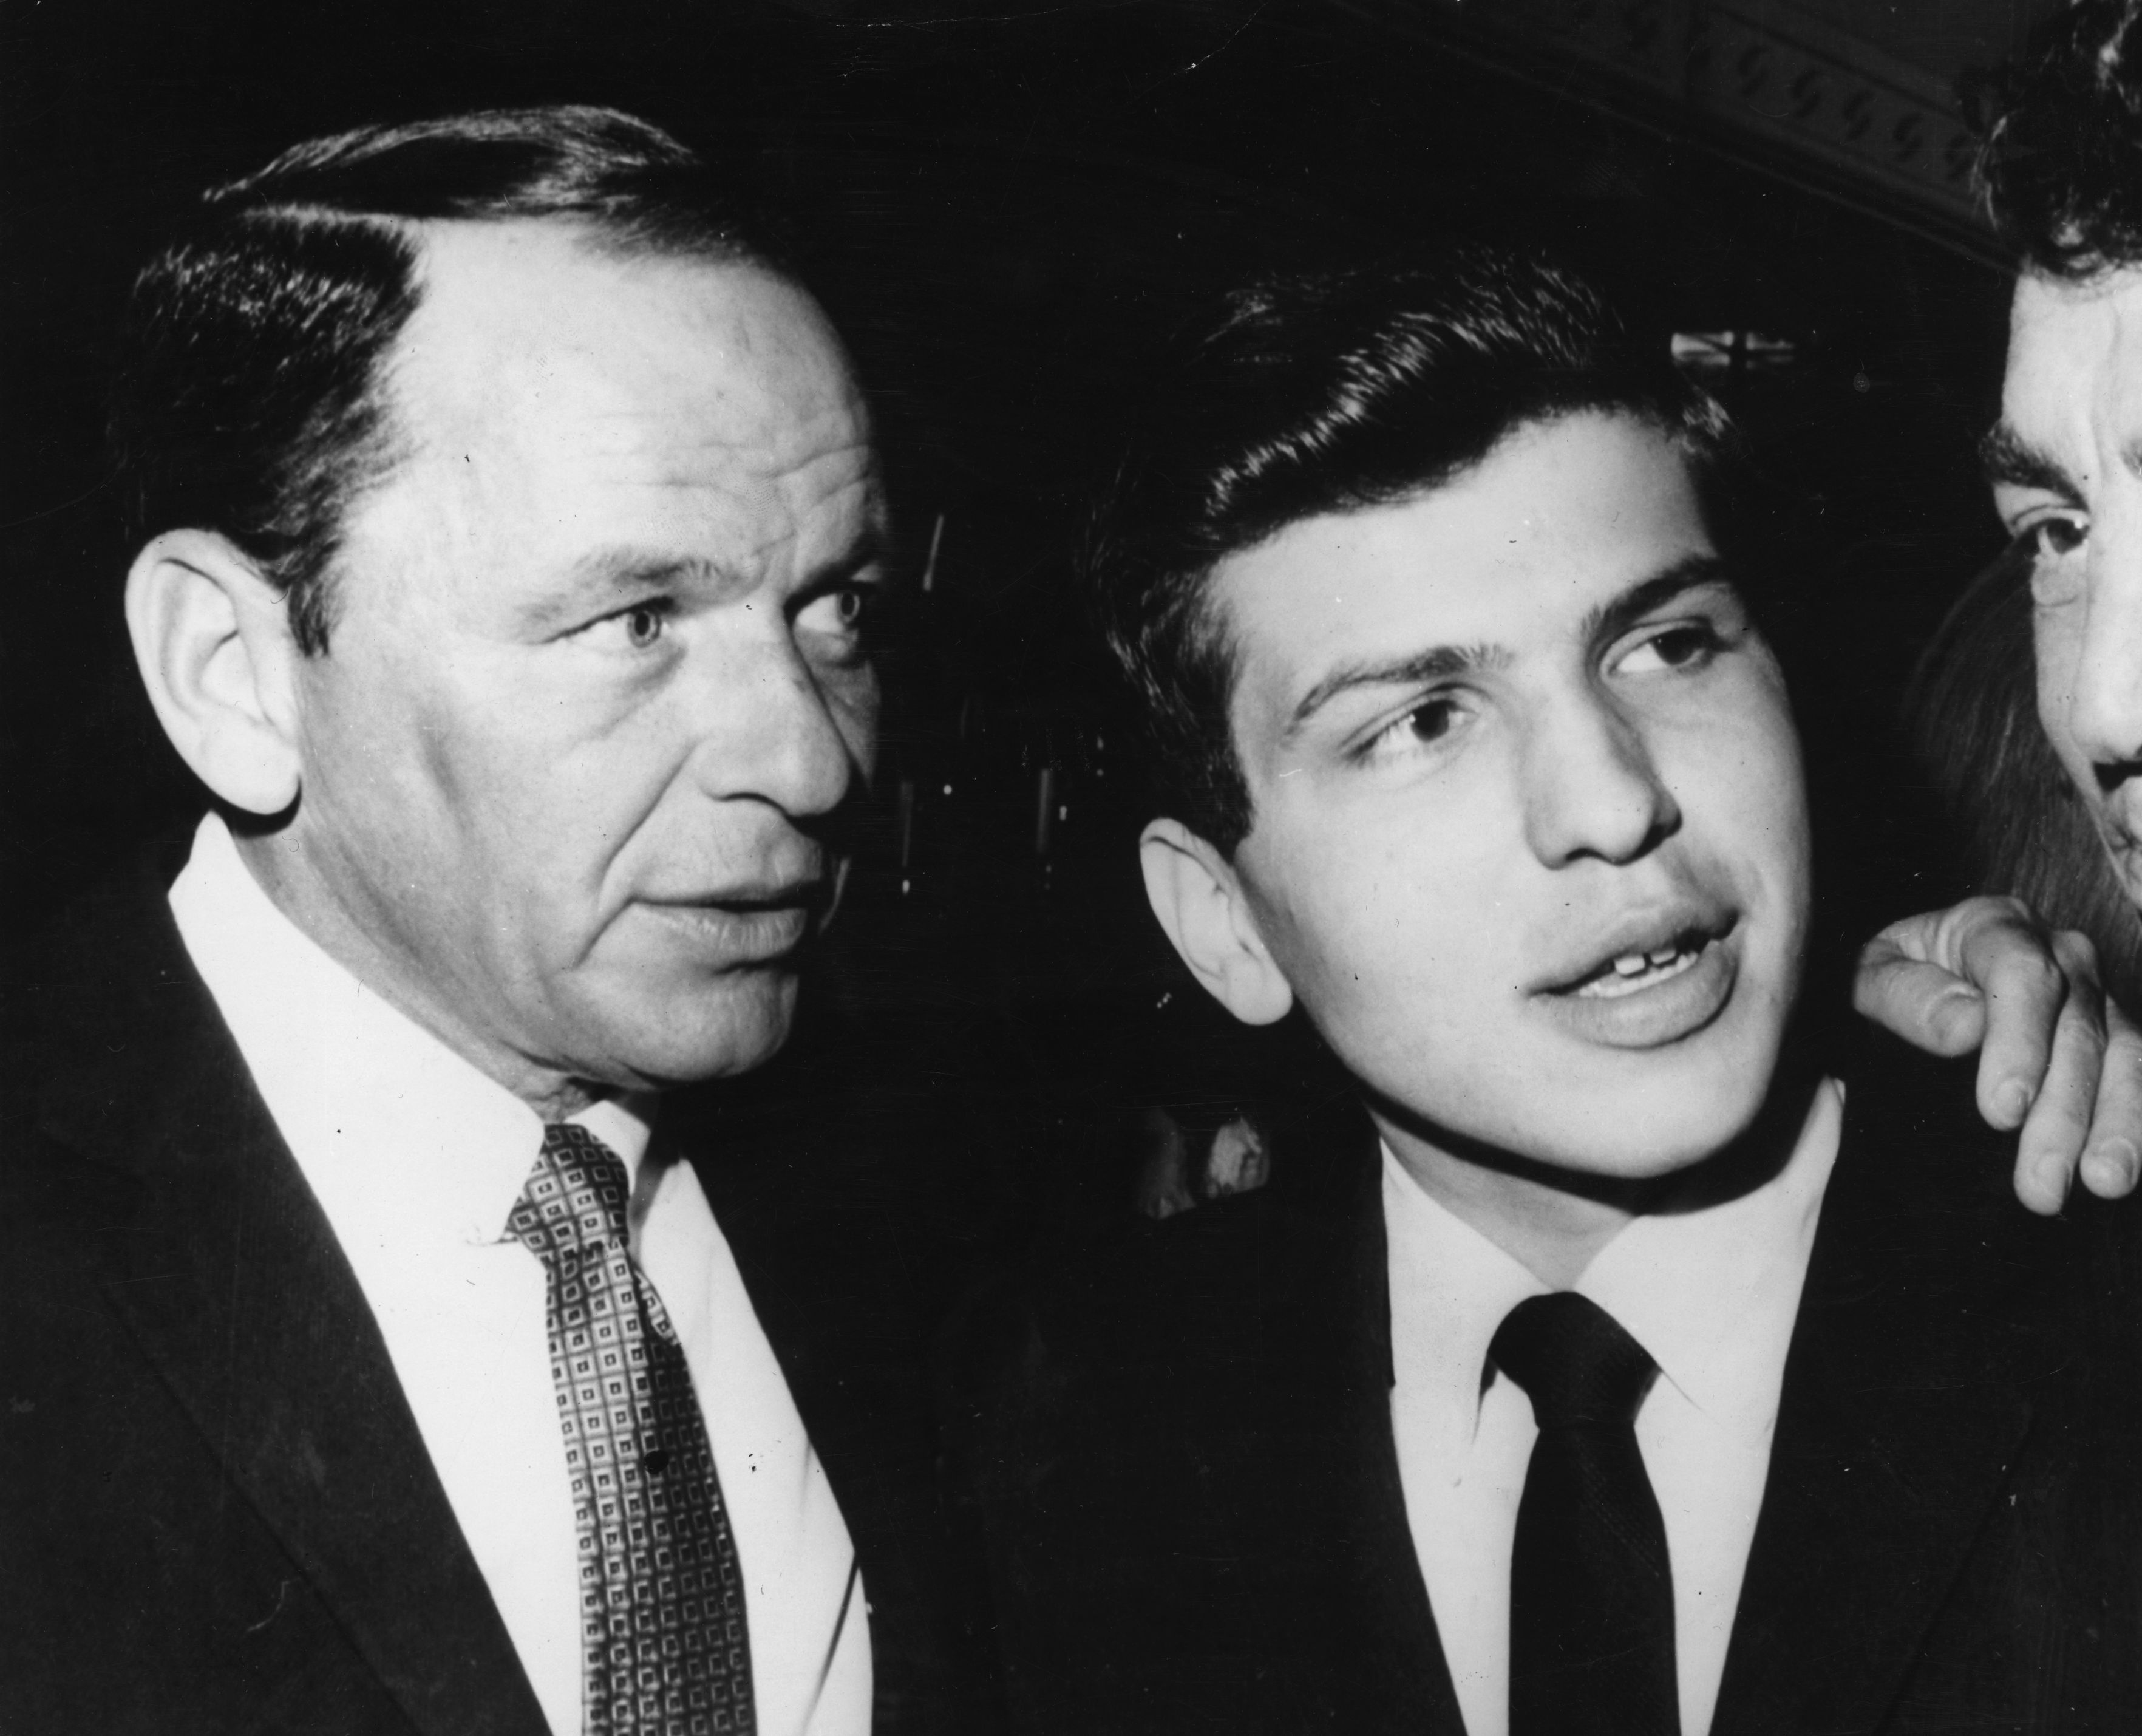 Frank Sinatra with his son Frank Sinatra Jr.